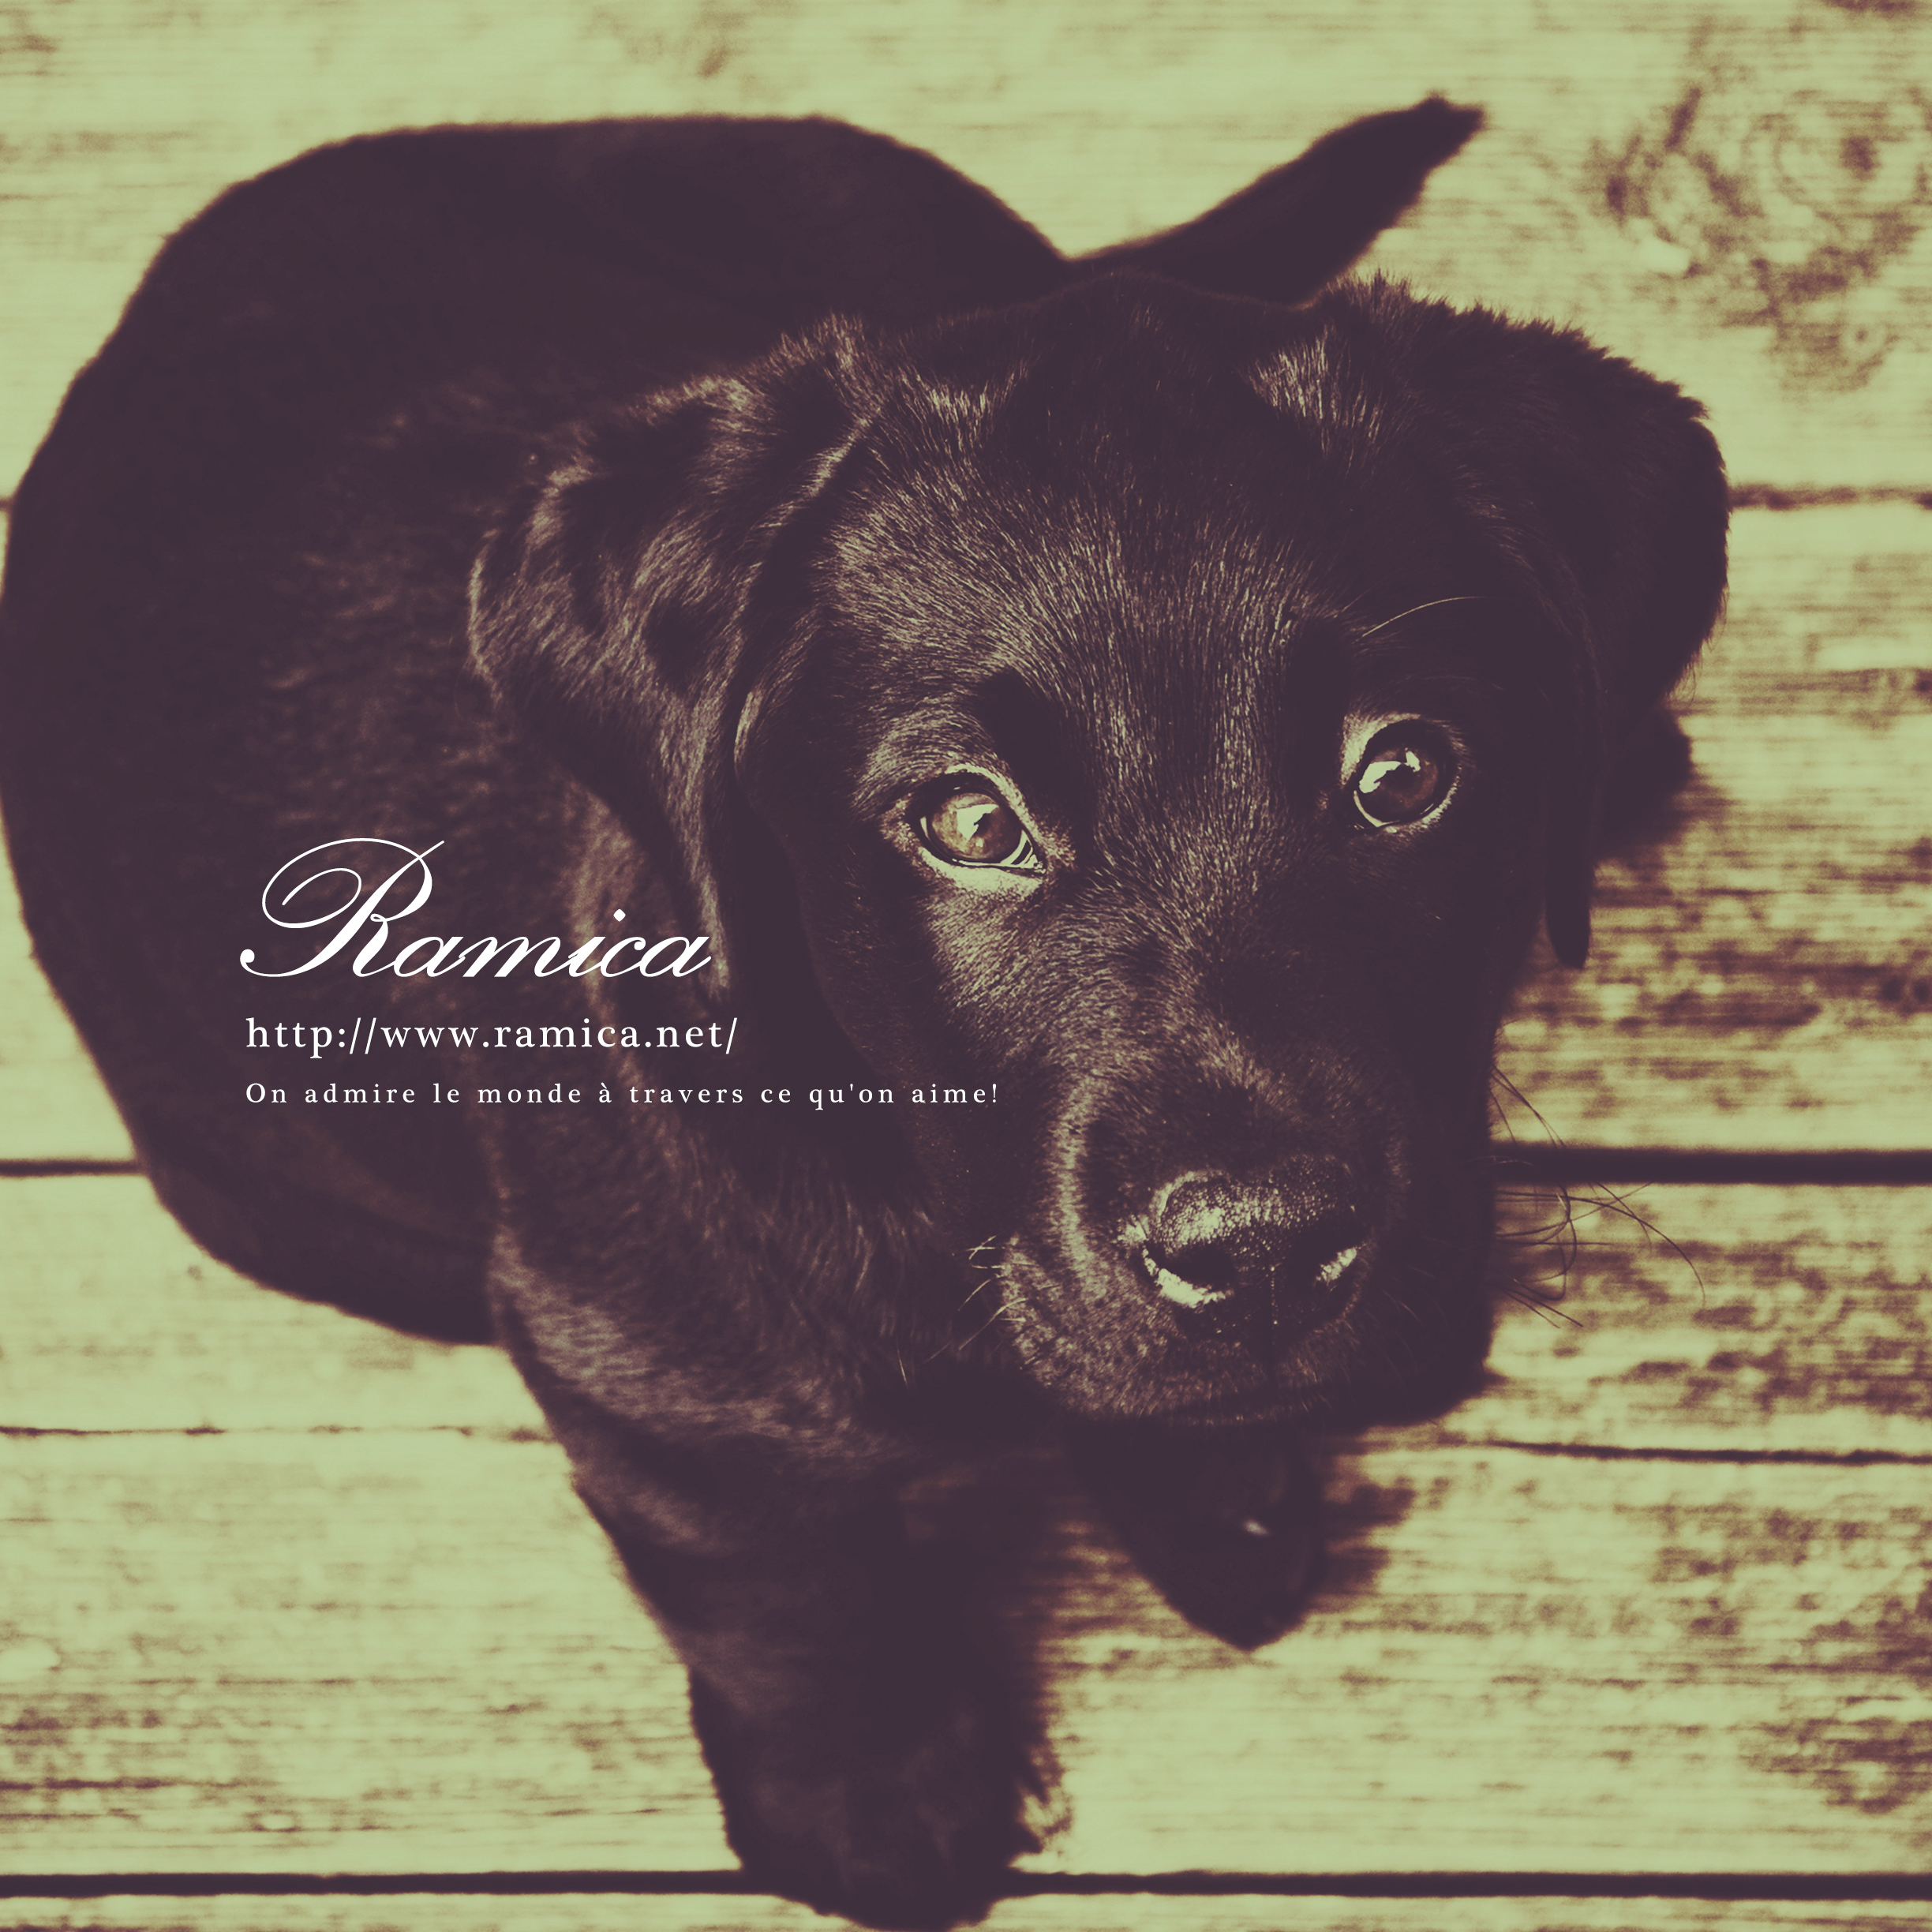 Ipad タブレット用無料壁紙ダウンロード 可愛い犬 ラブラドール Ramica